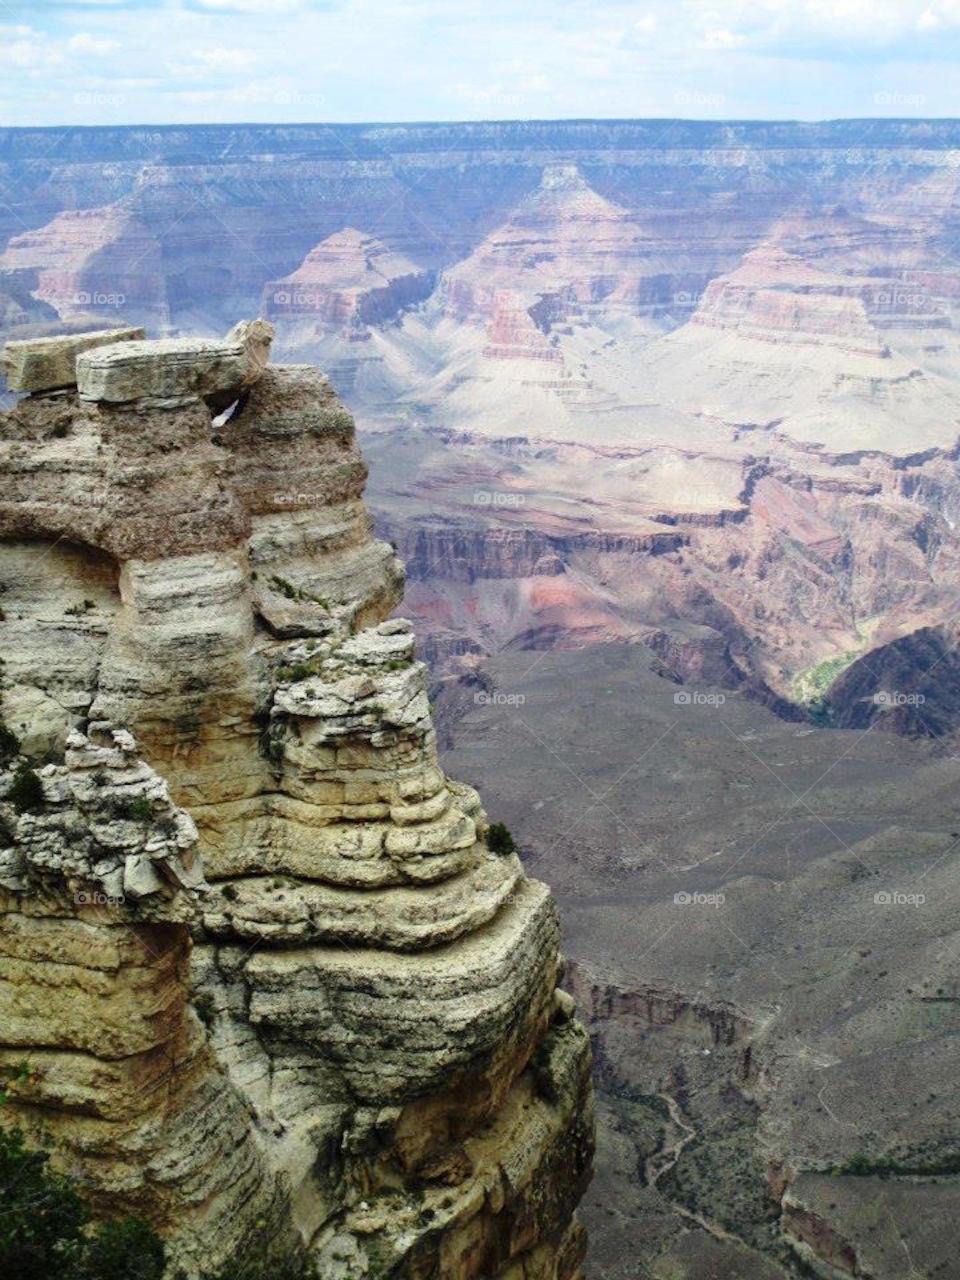 Grand Canyon. Taken 2013